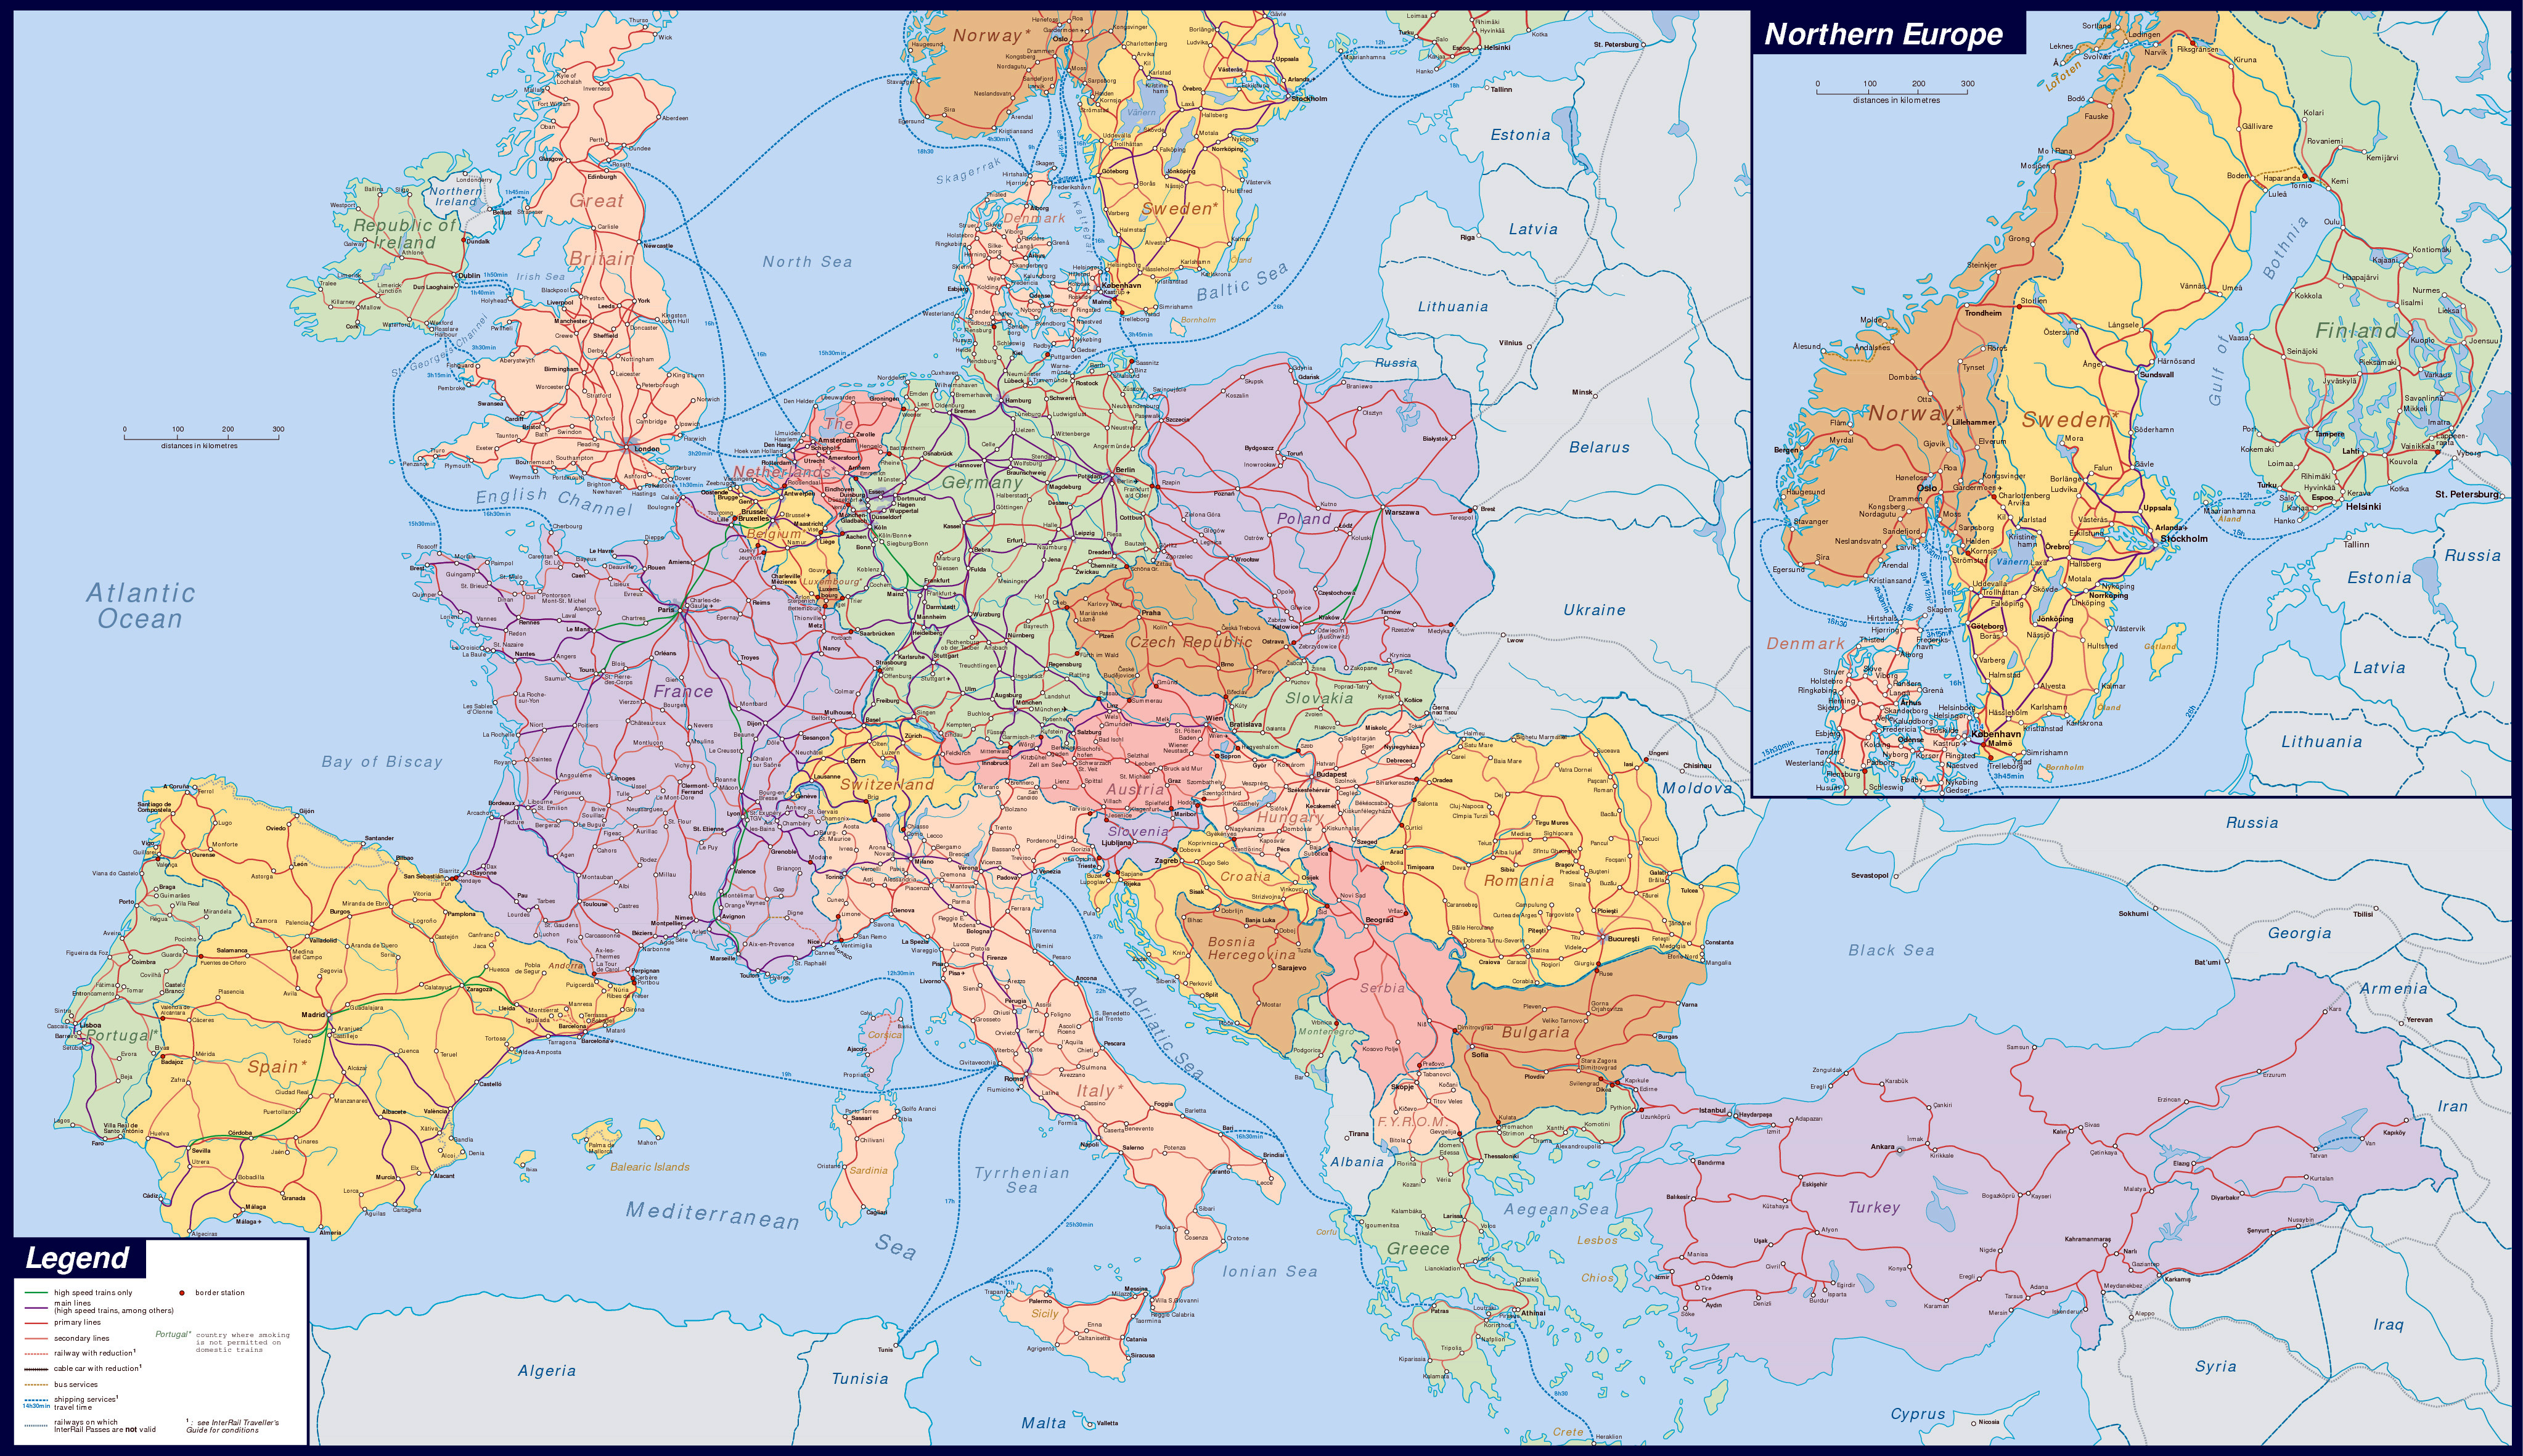 large map of europe Large Detailed Railways Map Of Europe Europe Mapsland Maps large map of europe